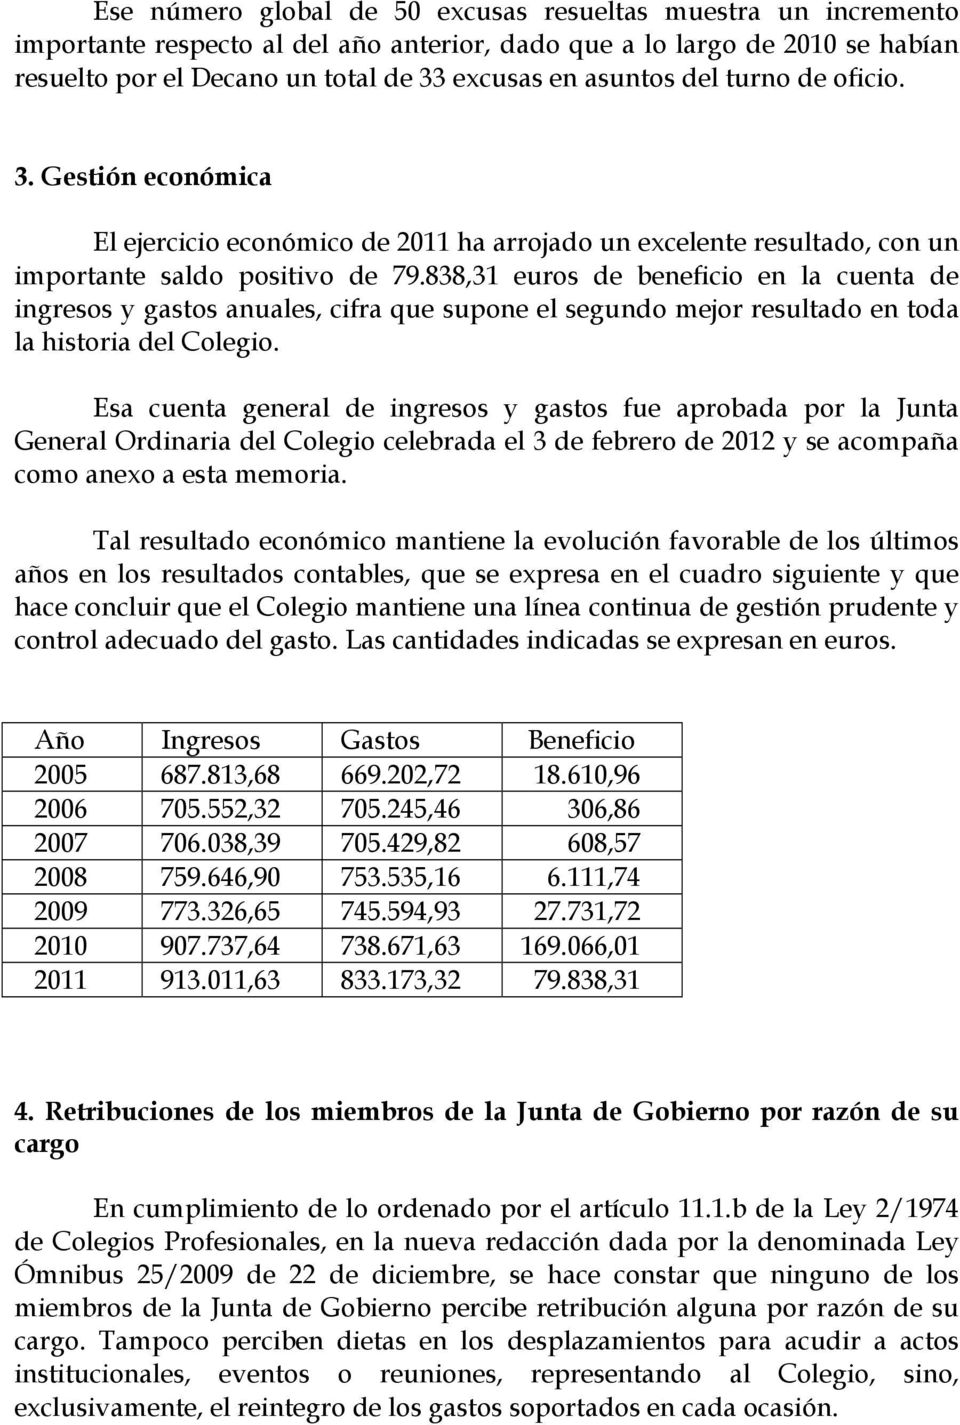 838,31 euros de beneficio en la cuenta de ingresos y gastos anuales, cifra que supone el segundo mejor resultado en toda la historia del Colegio.